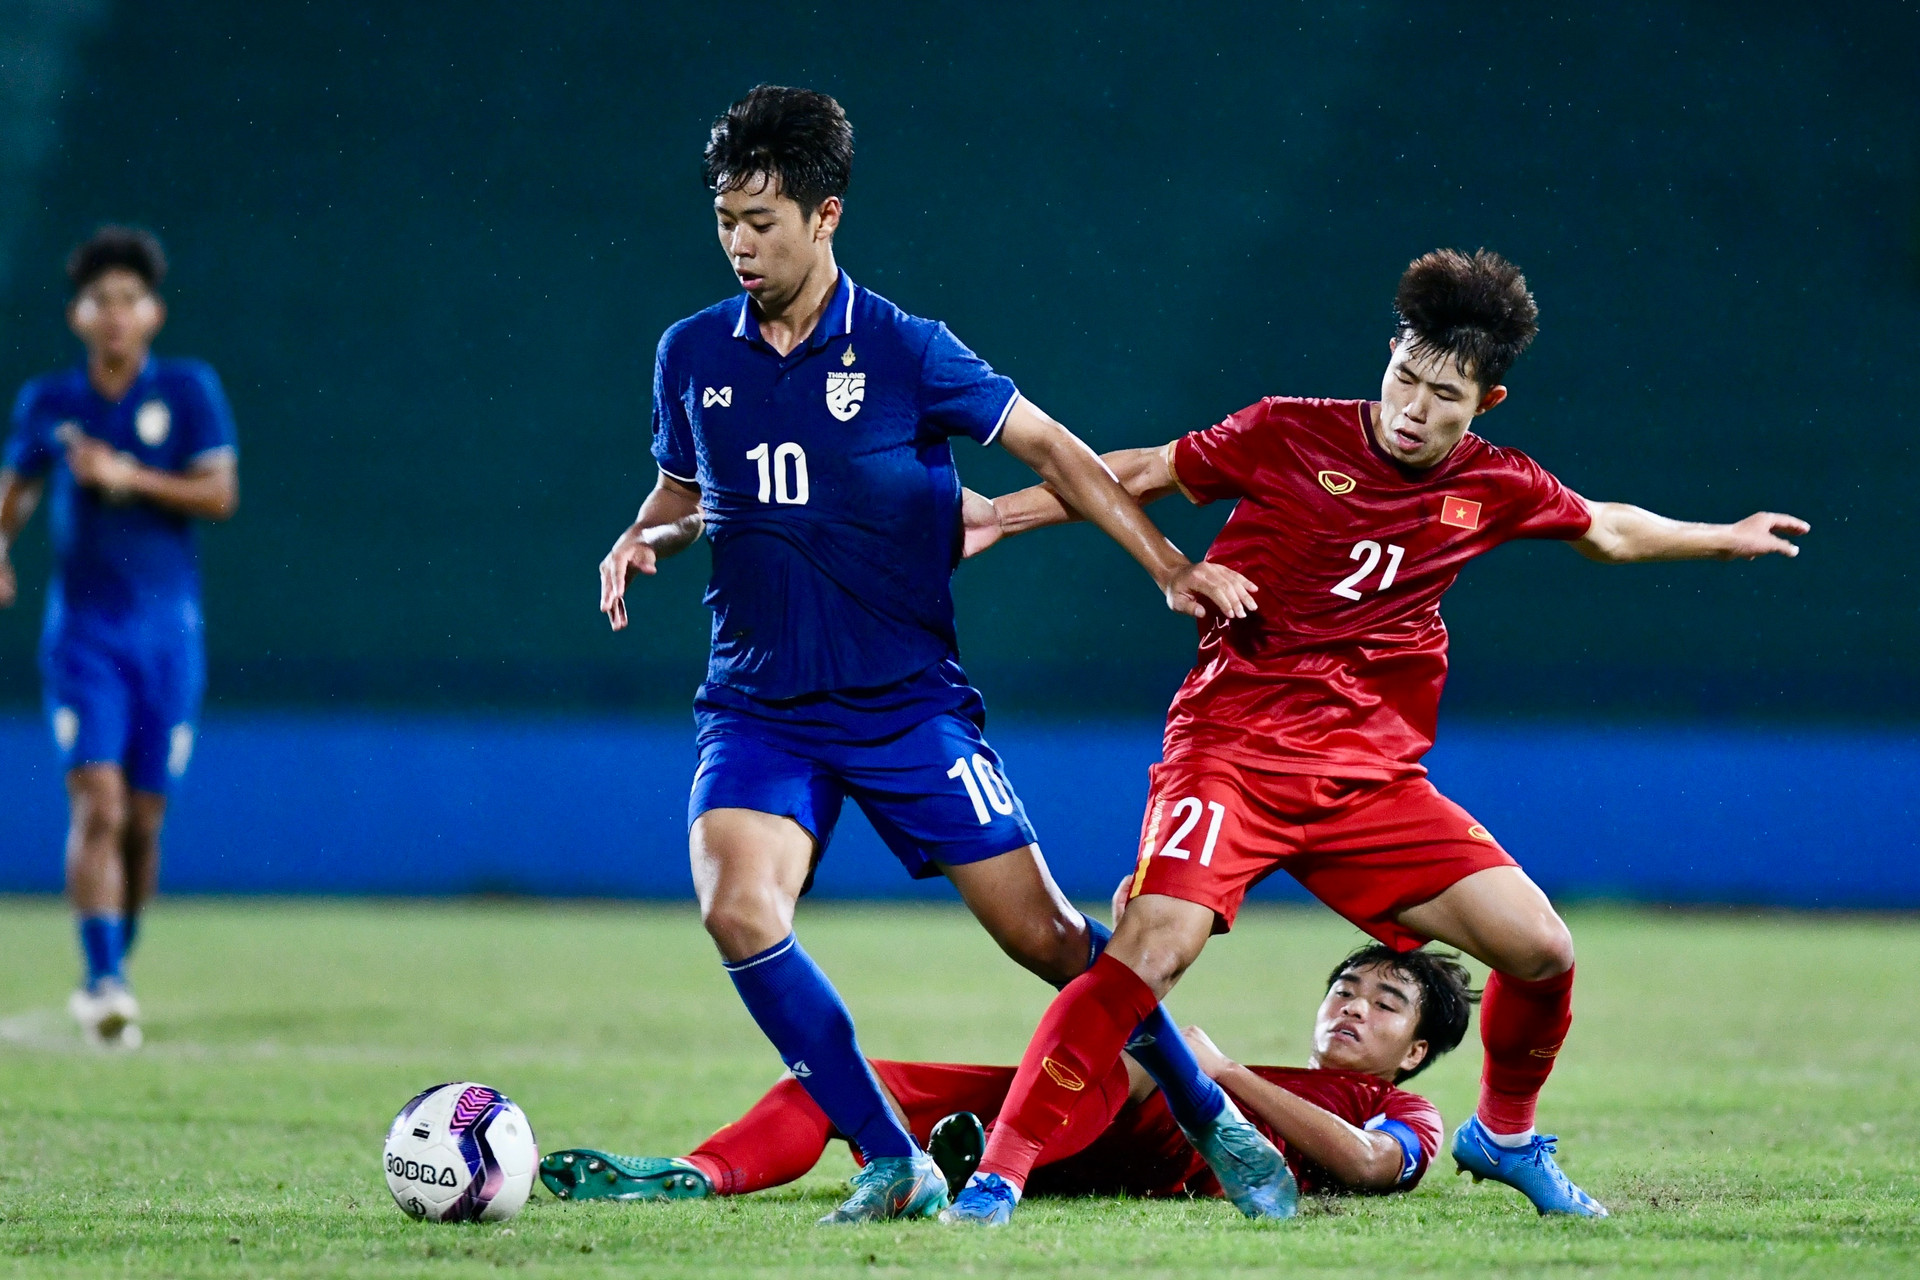 Báo Thái Lan thừa nhận sự thật đau lòng khi liên tục thua bóng đá Việt Nam - 2